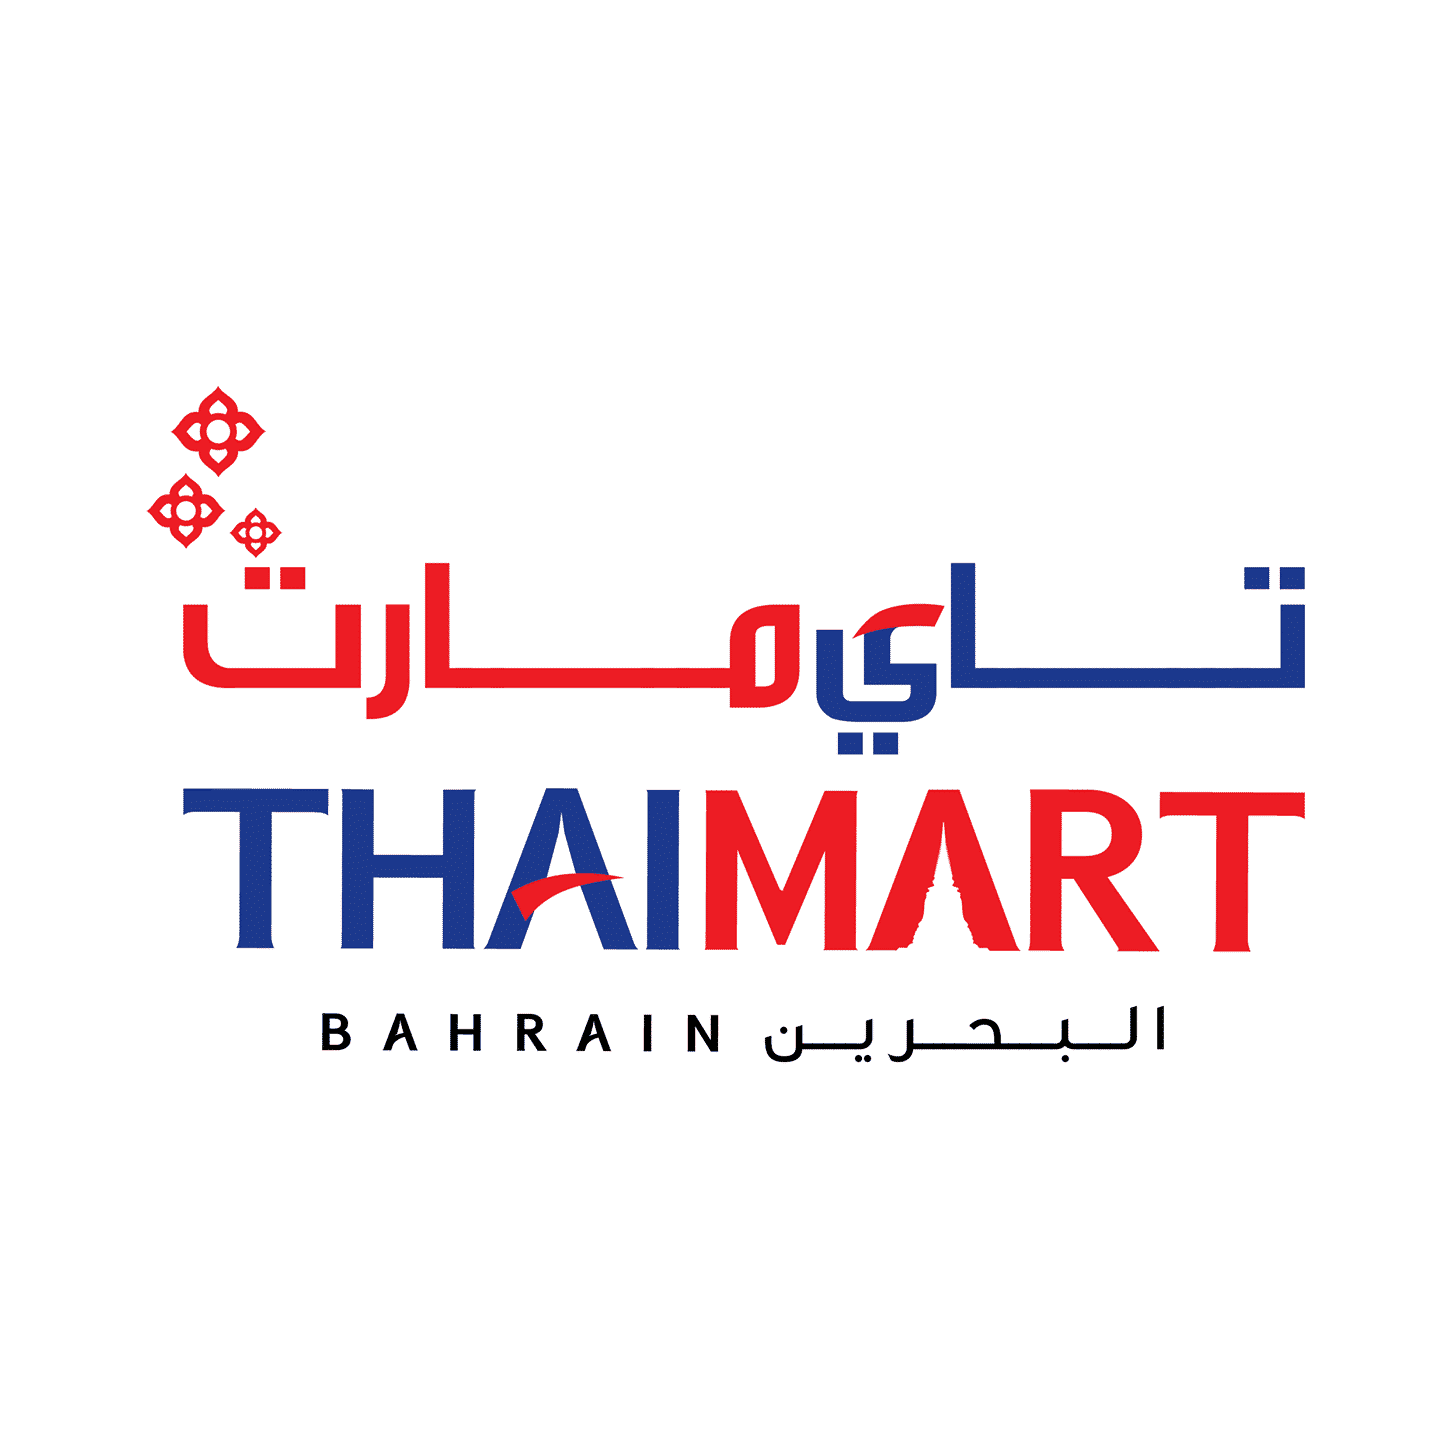 ThaiMart Bahrain